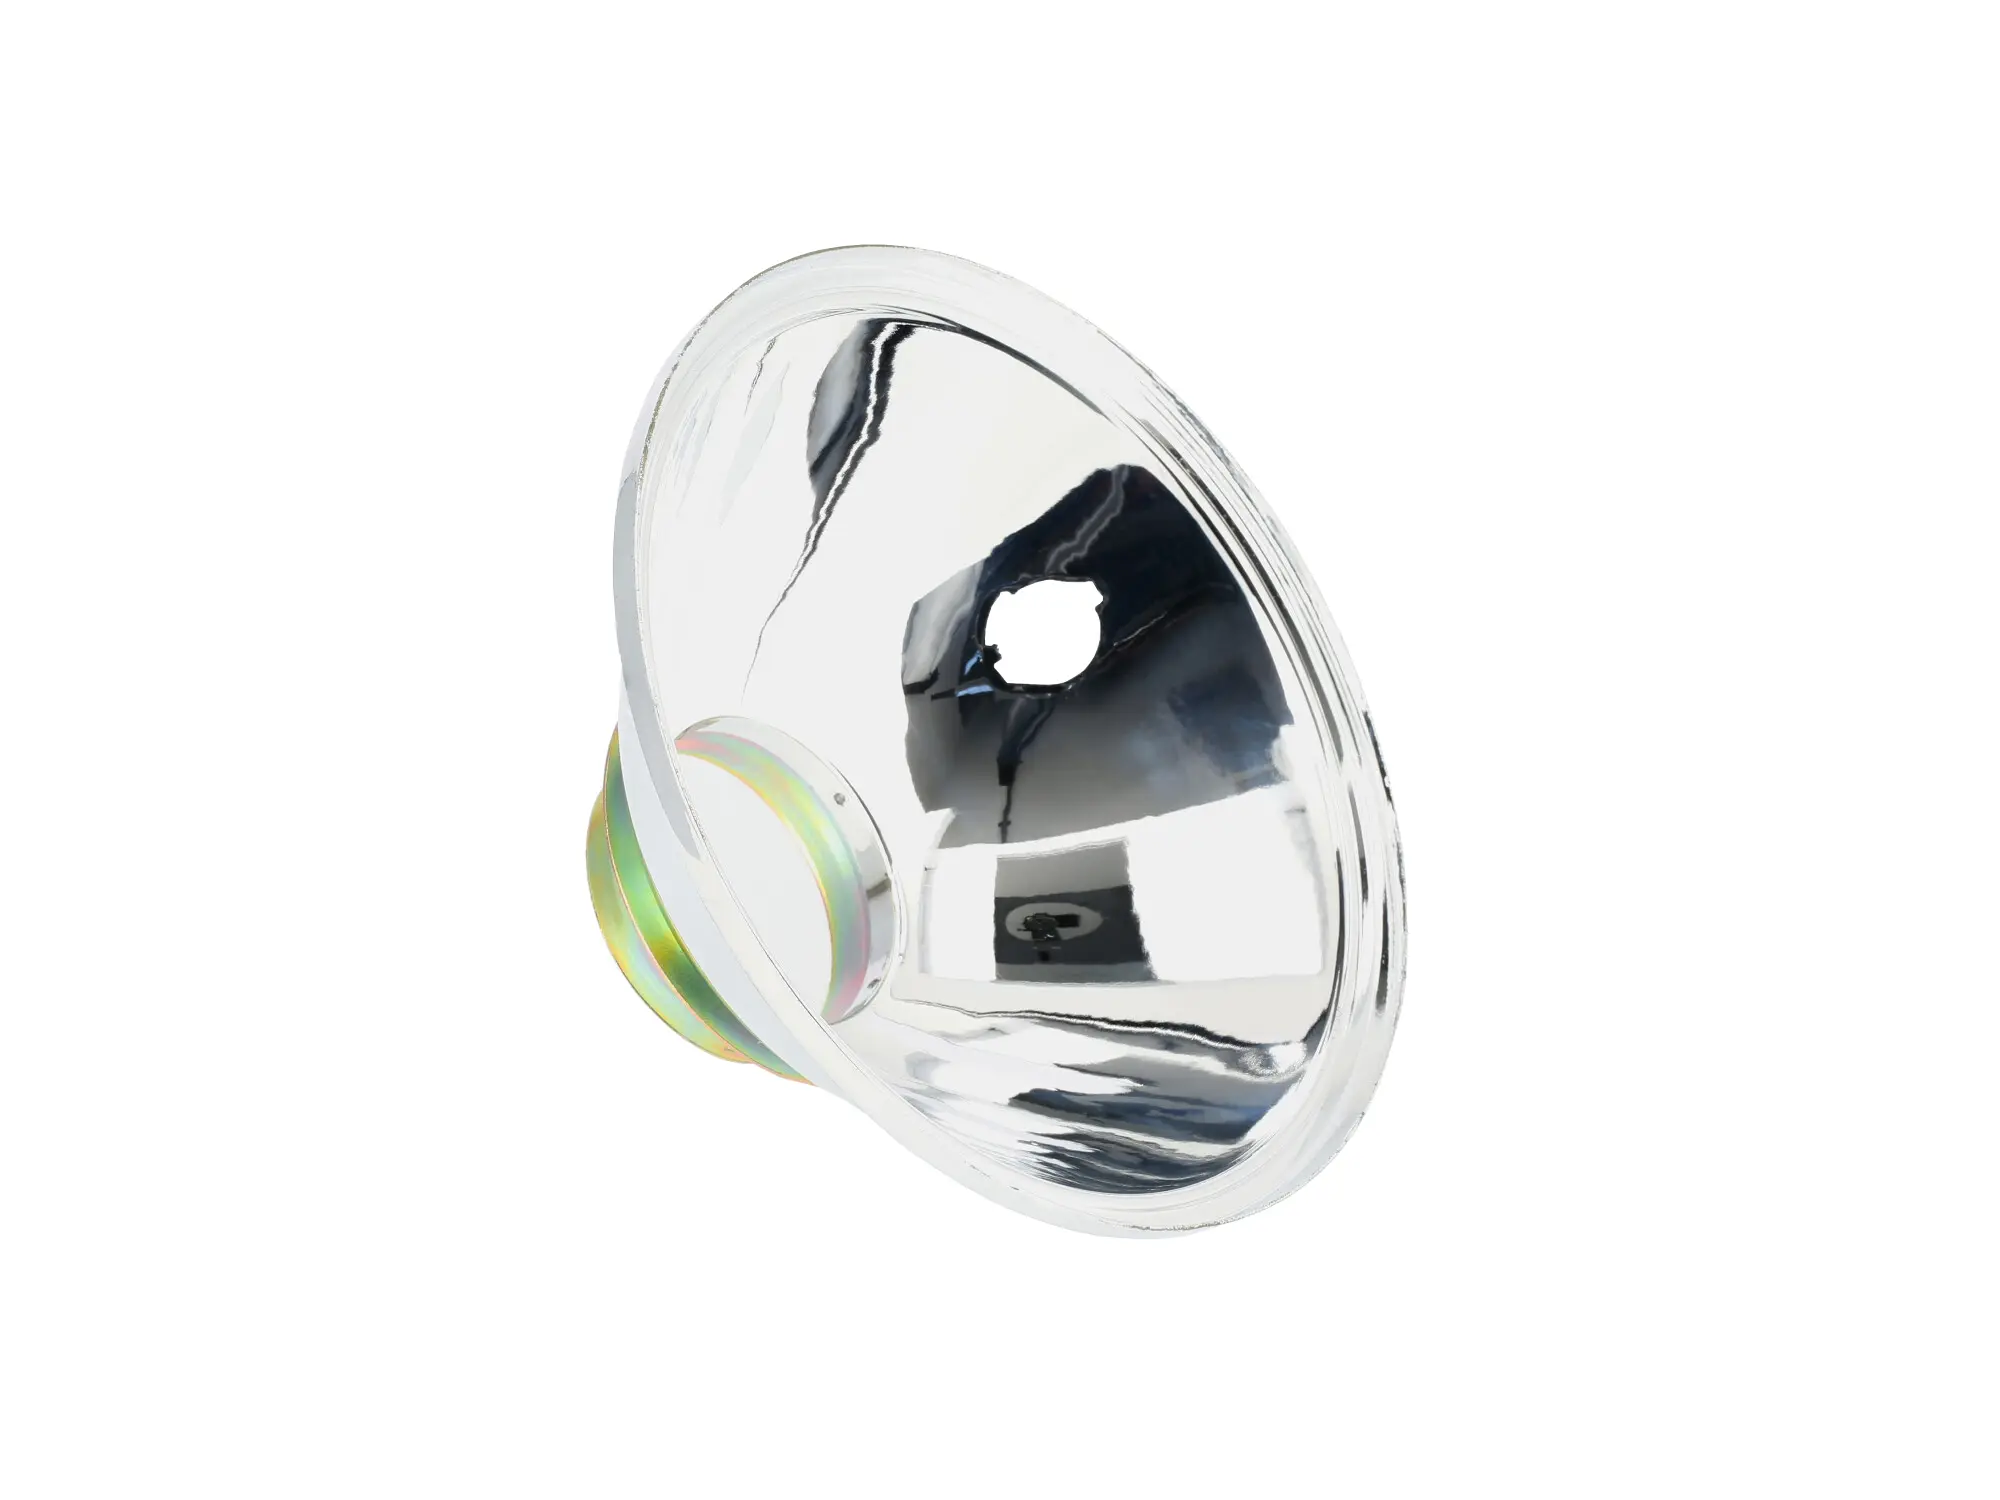 Abverkauf - Reflektor Ø142mm (ohne Glas) mit Aussparung für Standlicht - für Simson S50, S51, Art.-Nr.: 99001931 - Bild 1